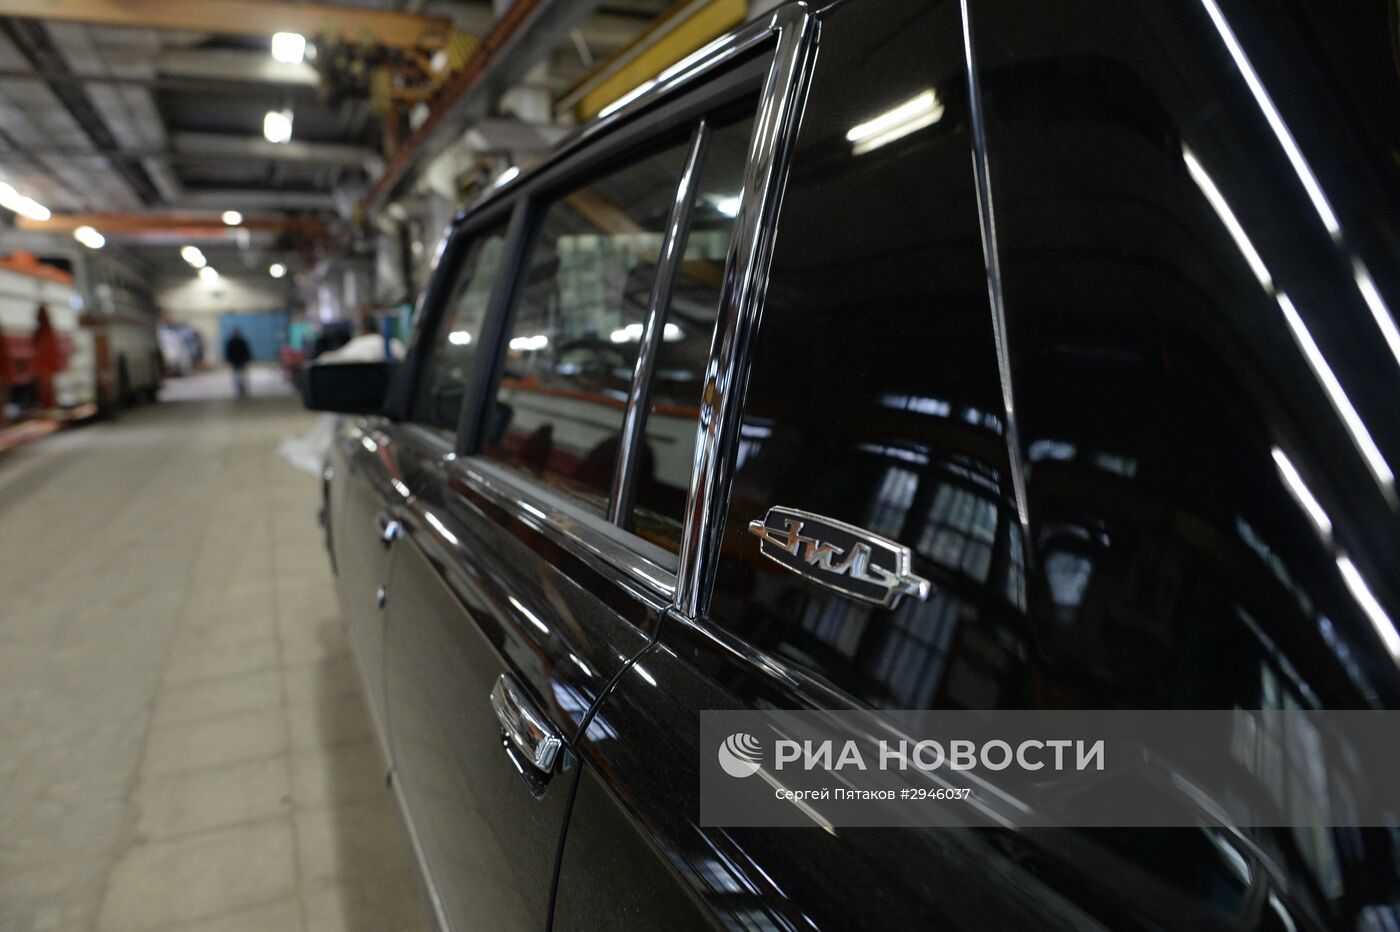 Цех реставрации автомобилей представительского класса на АМО ЗИЛ